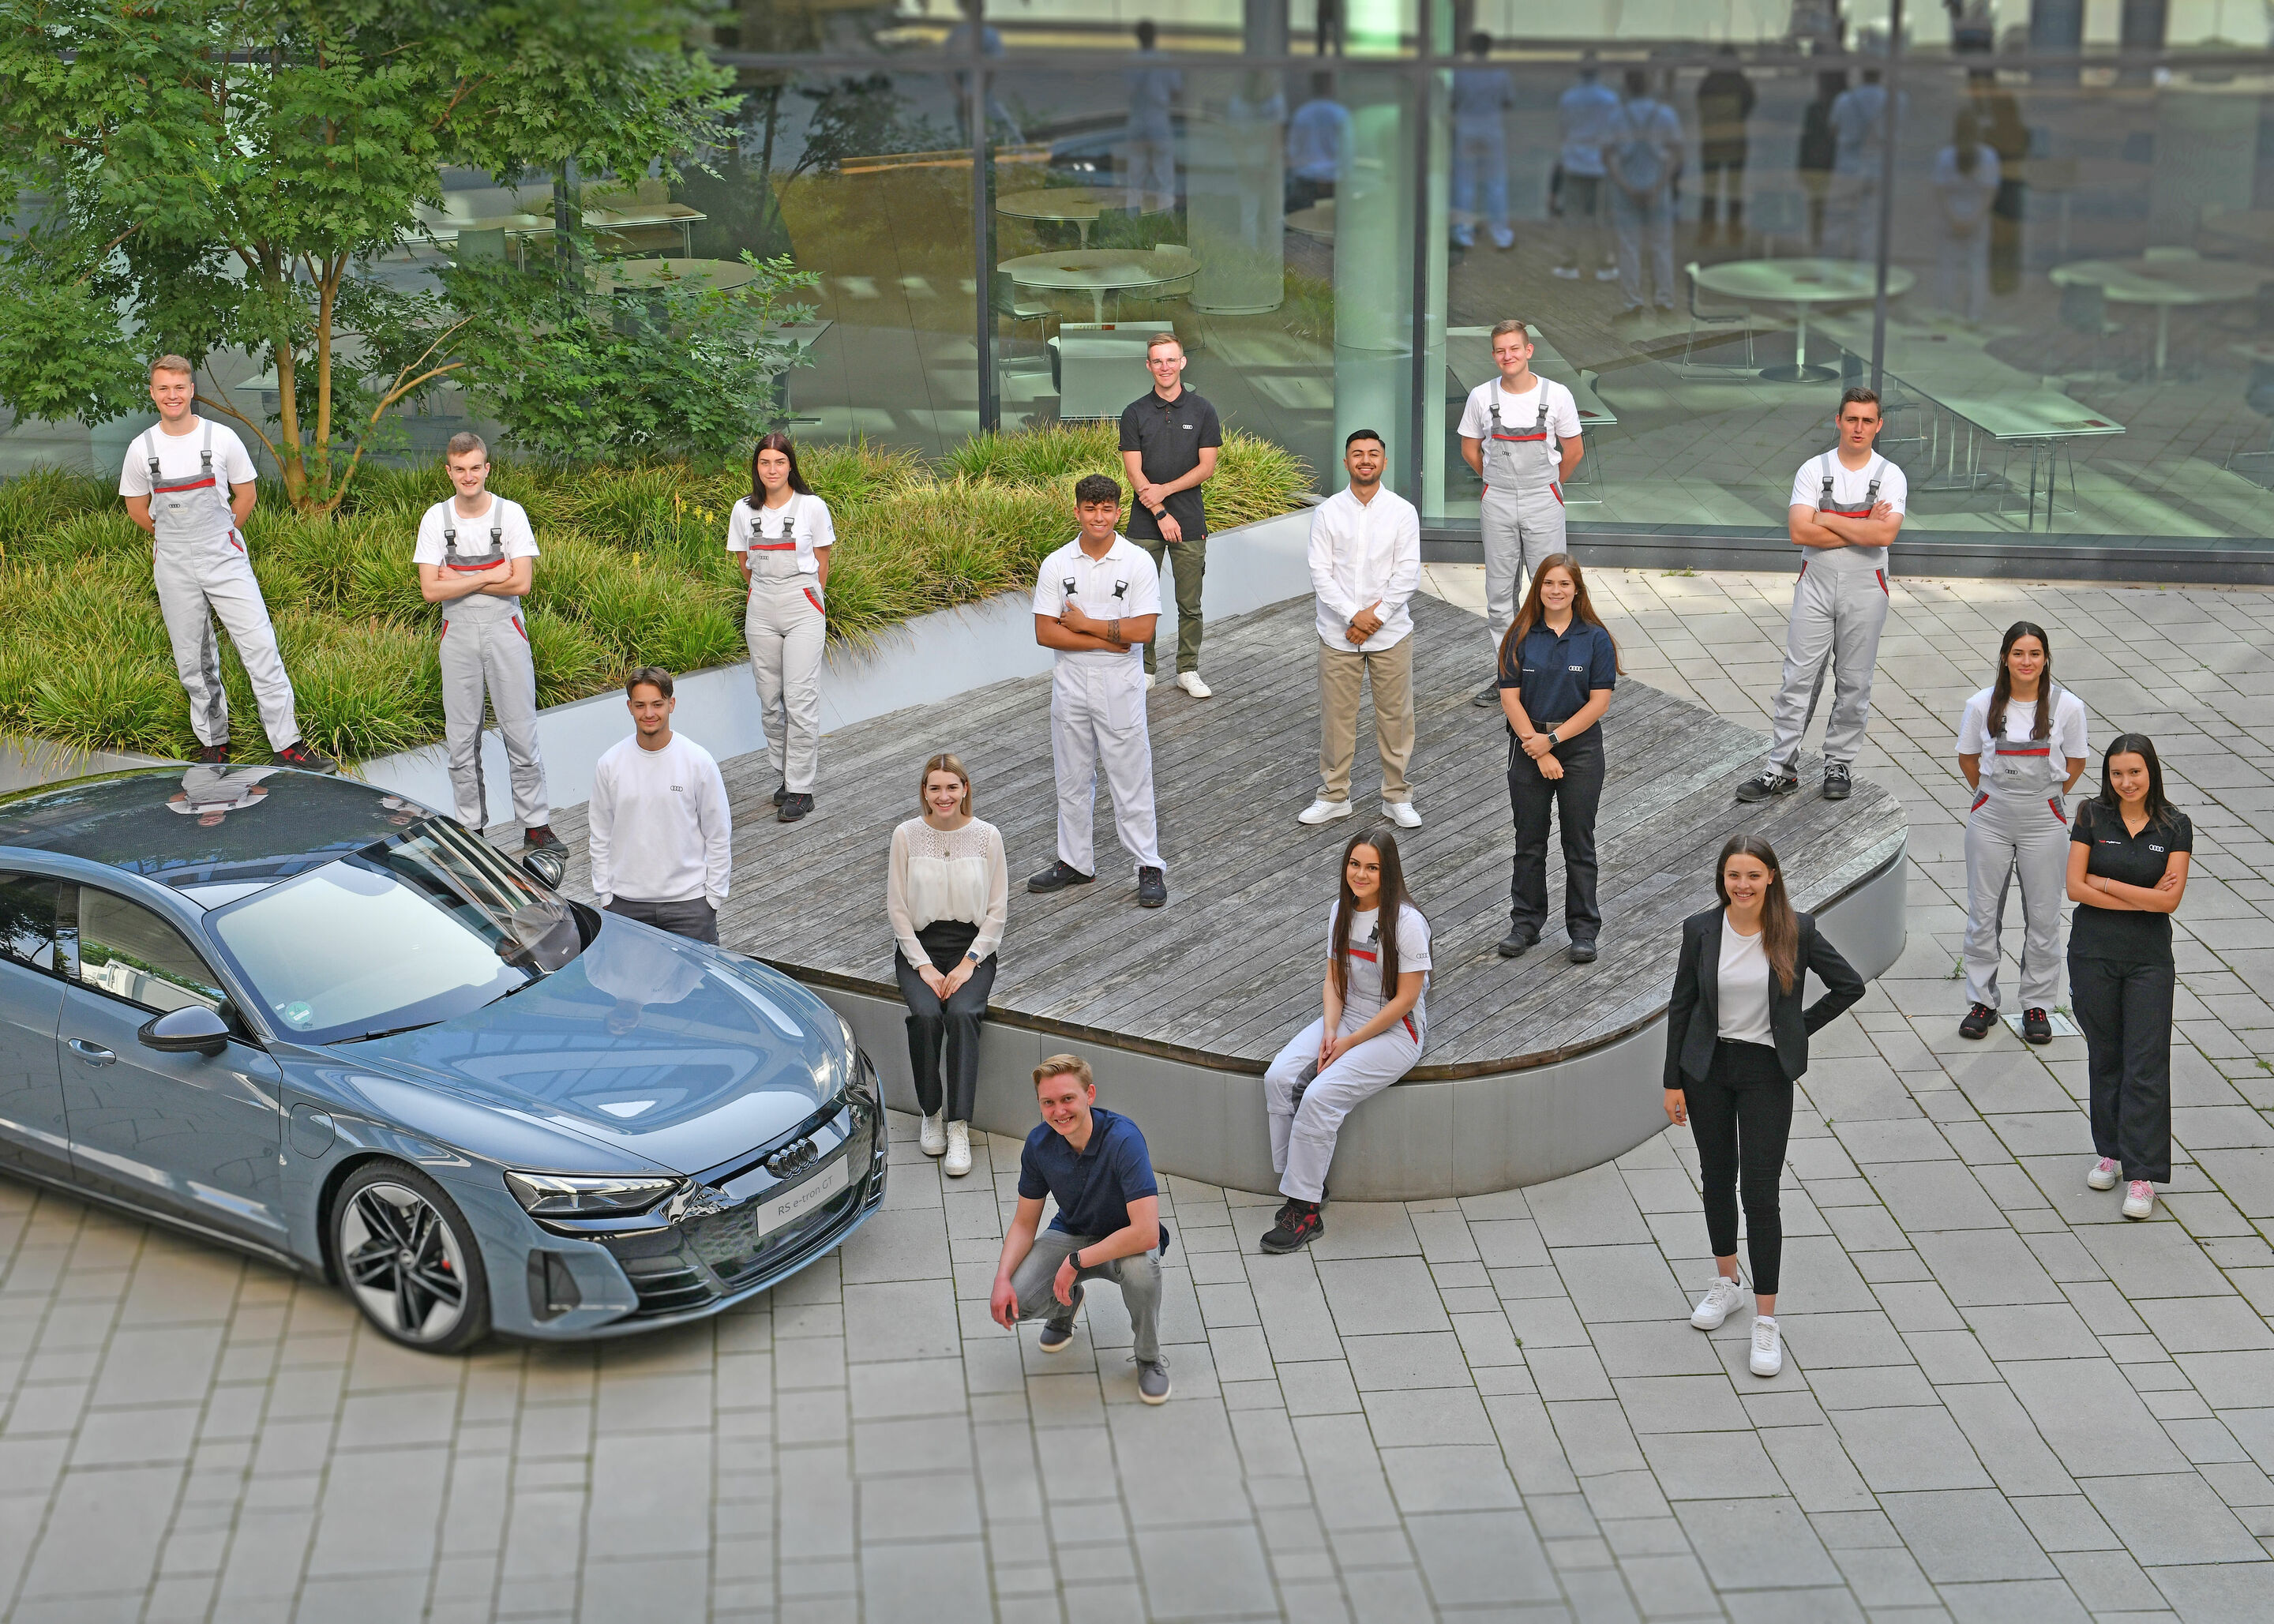 Ausbildung bei Audi: Start in die Berufe von morgen